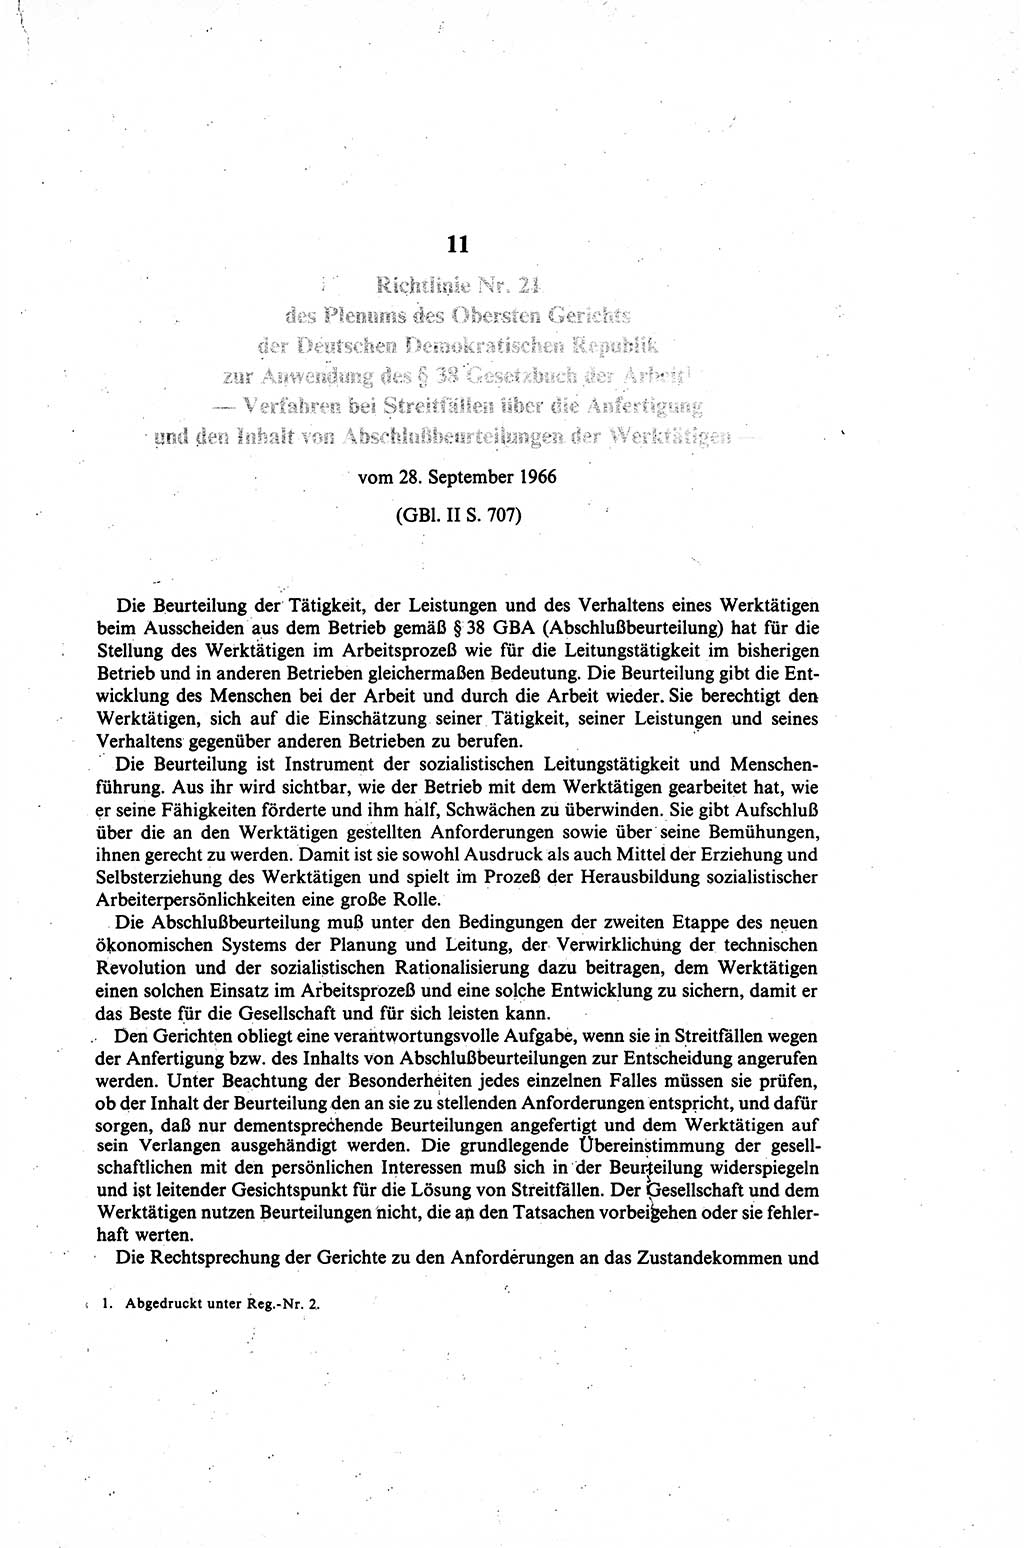 Gesetzbuch der Arbeit (GBA) und andere ausgewählte rechtliche Bestimmungen [Deutsche Demokratische Republik (DDR)] 1968, Seite 189 (GBA DDR 1968, S. 189)